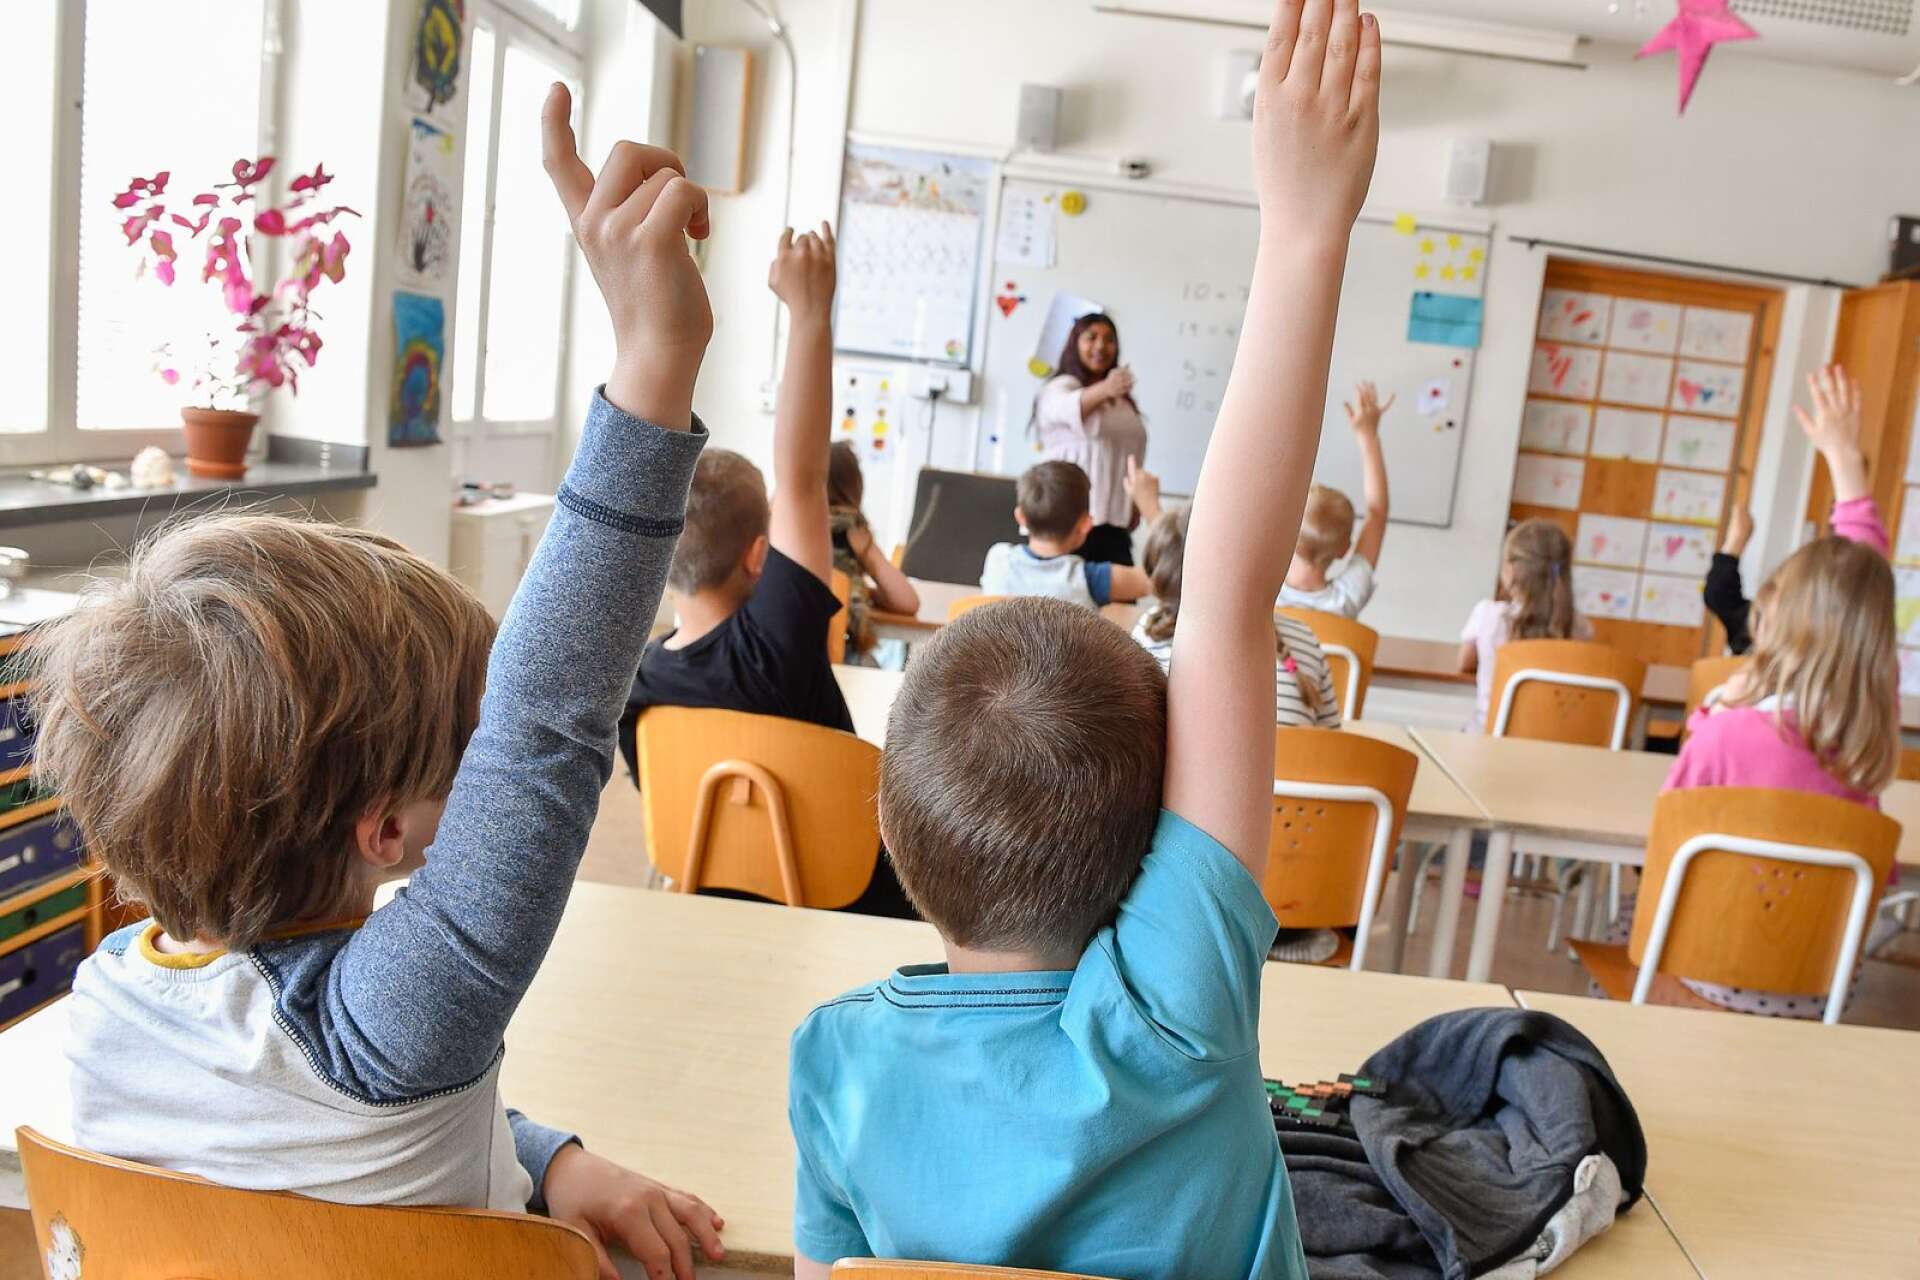 Med minst en procentenhet har lärarbehörigheten sjunkit i sju av 16 kommuner i Värmlands län.